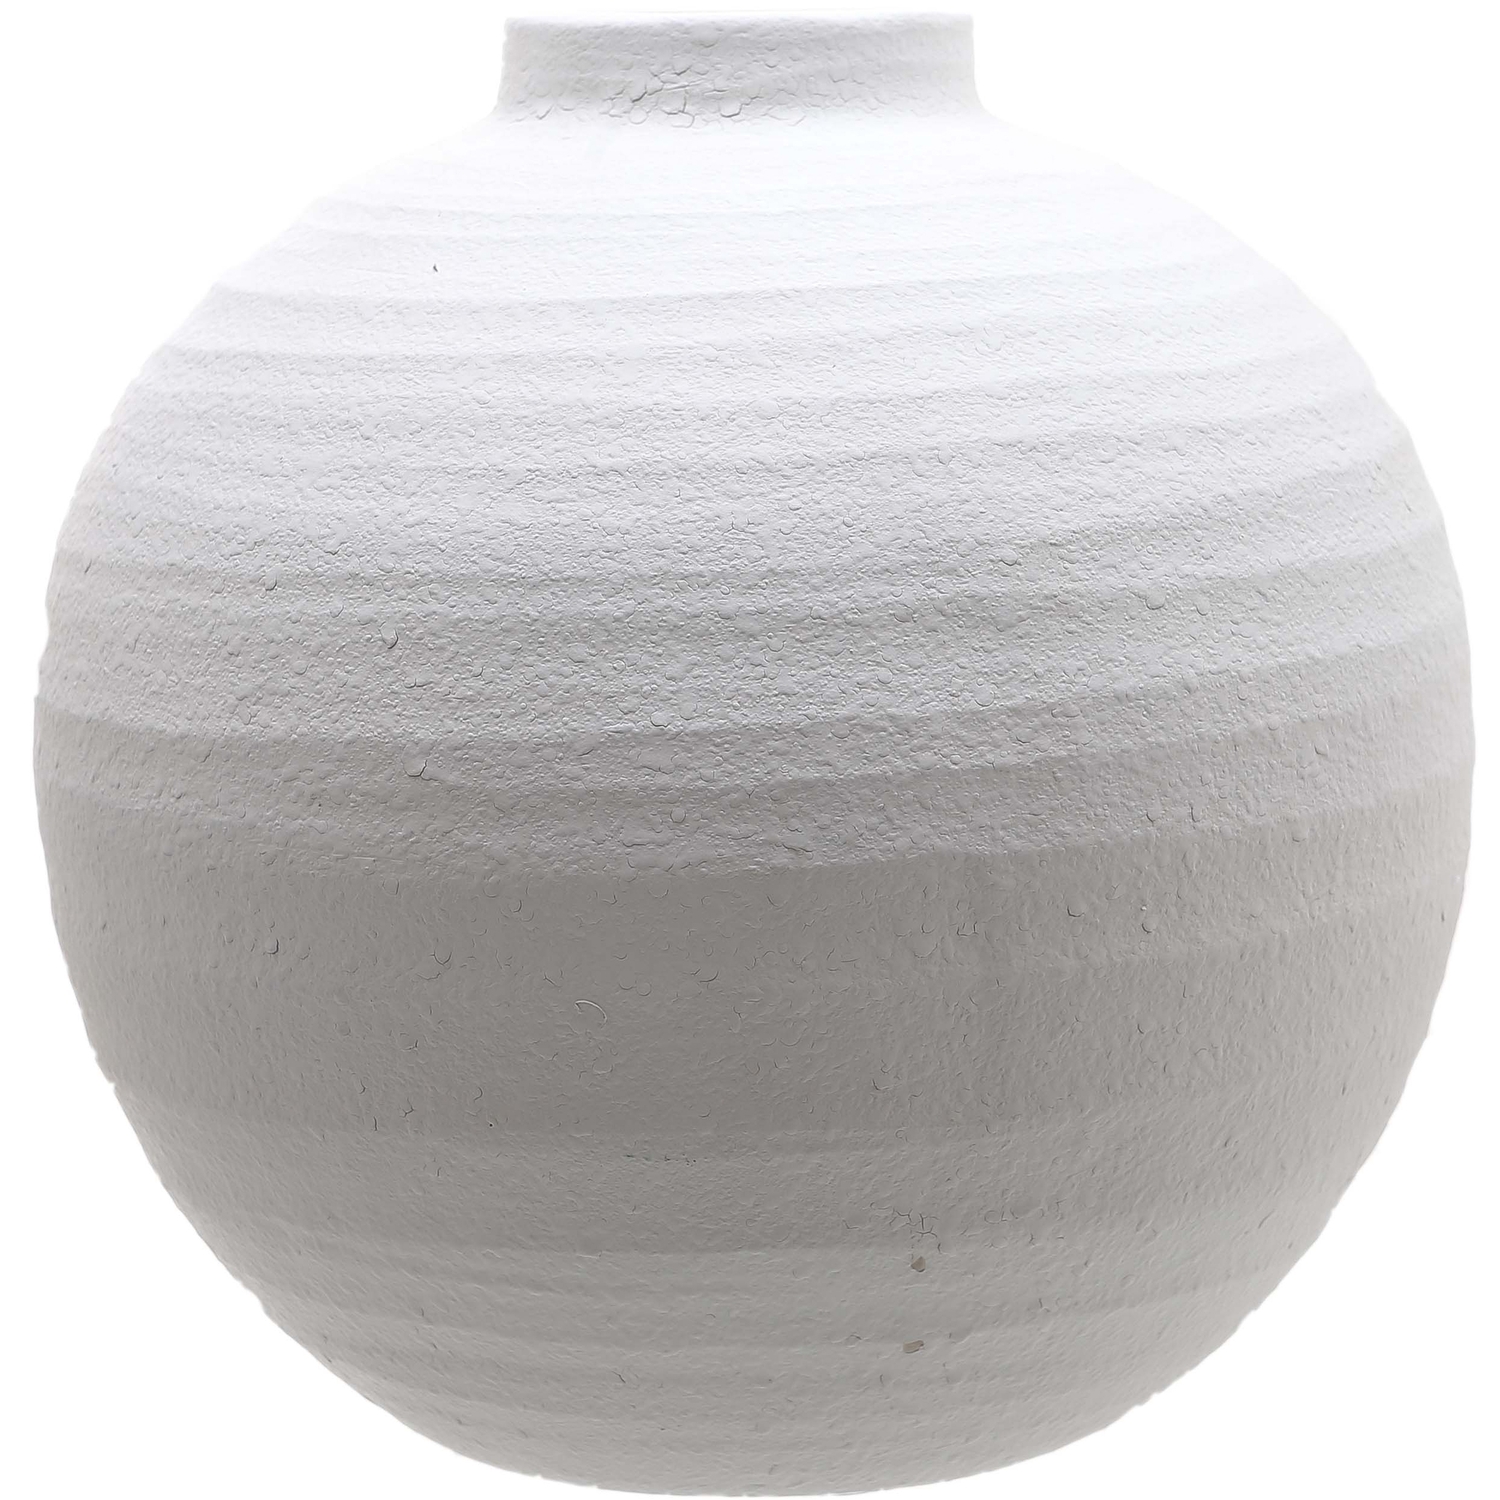 Tiber Large Matt White Ceramic Vase - Image 1